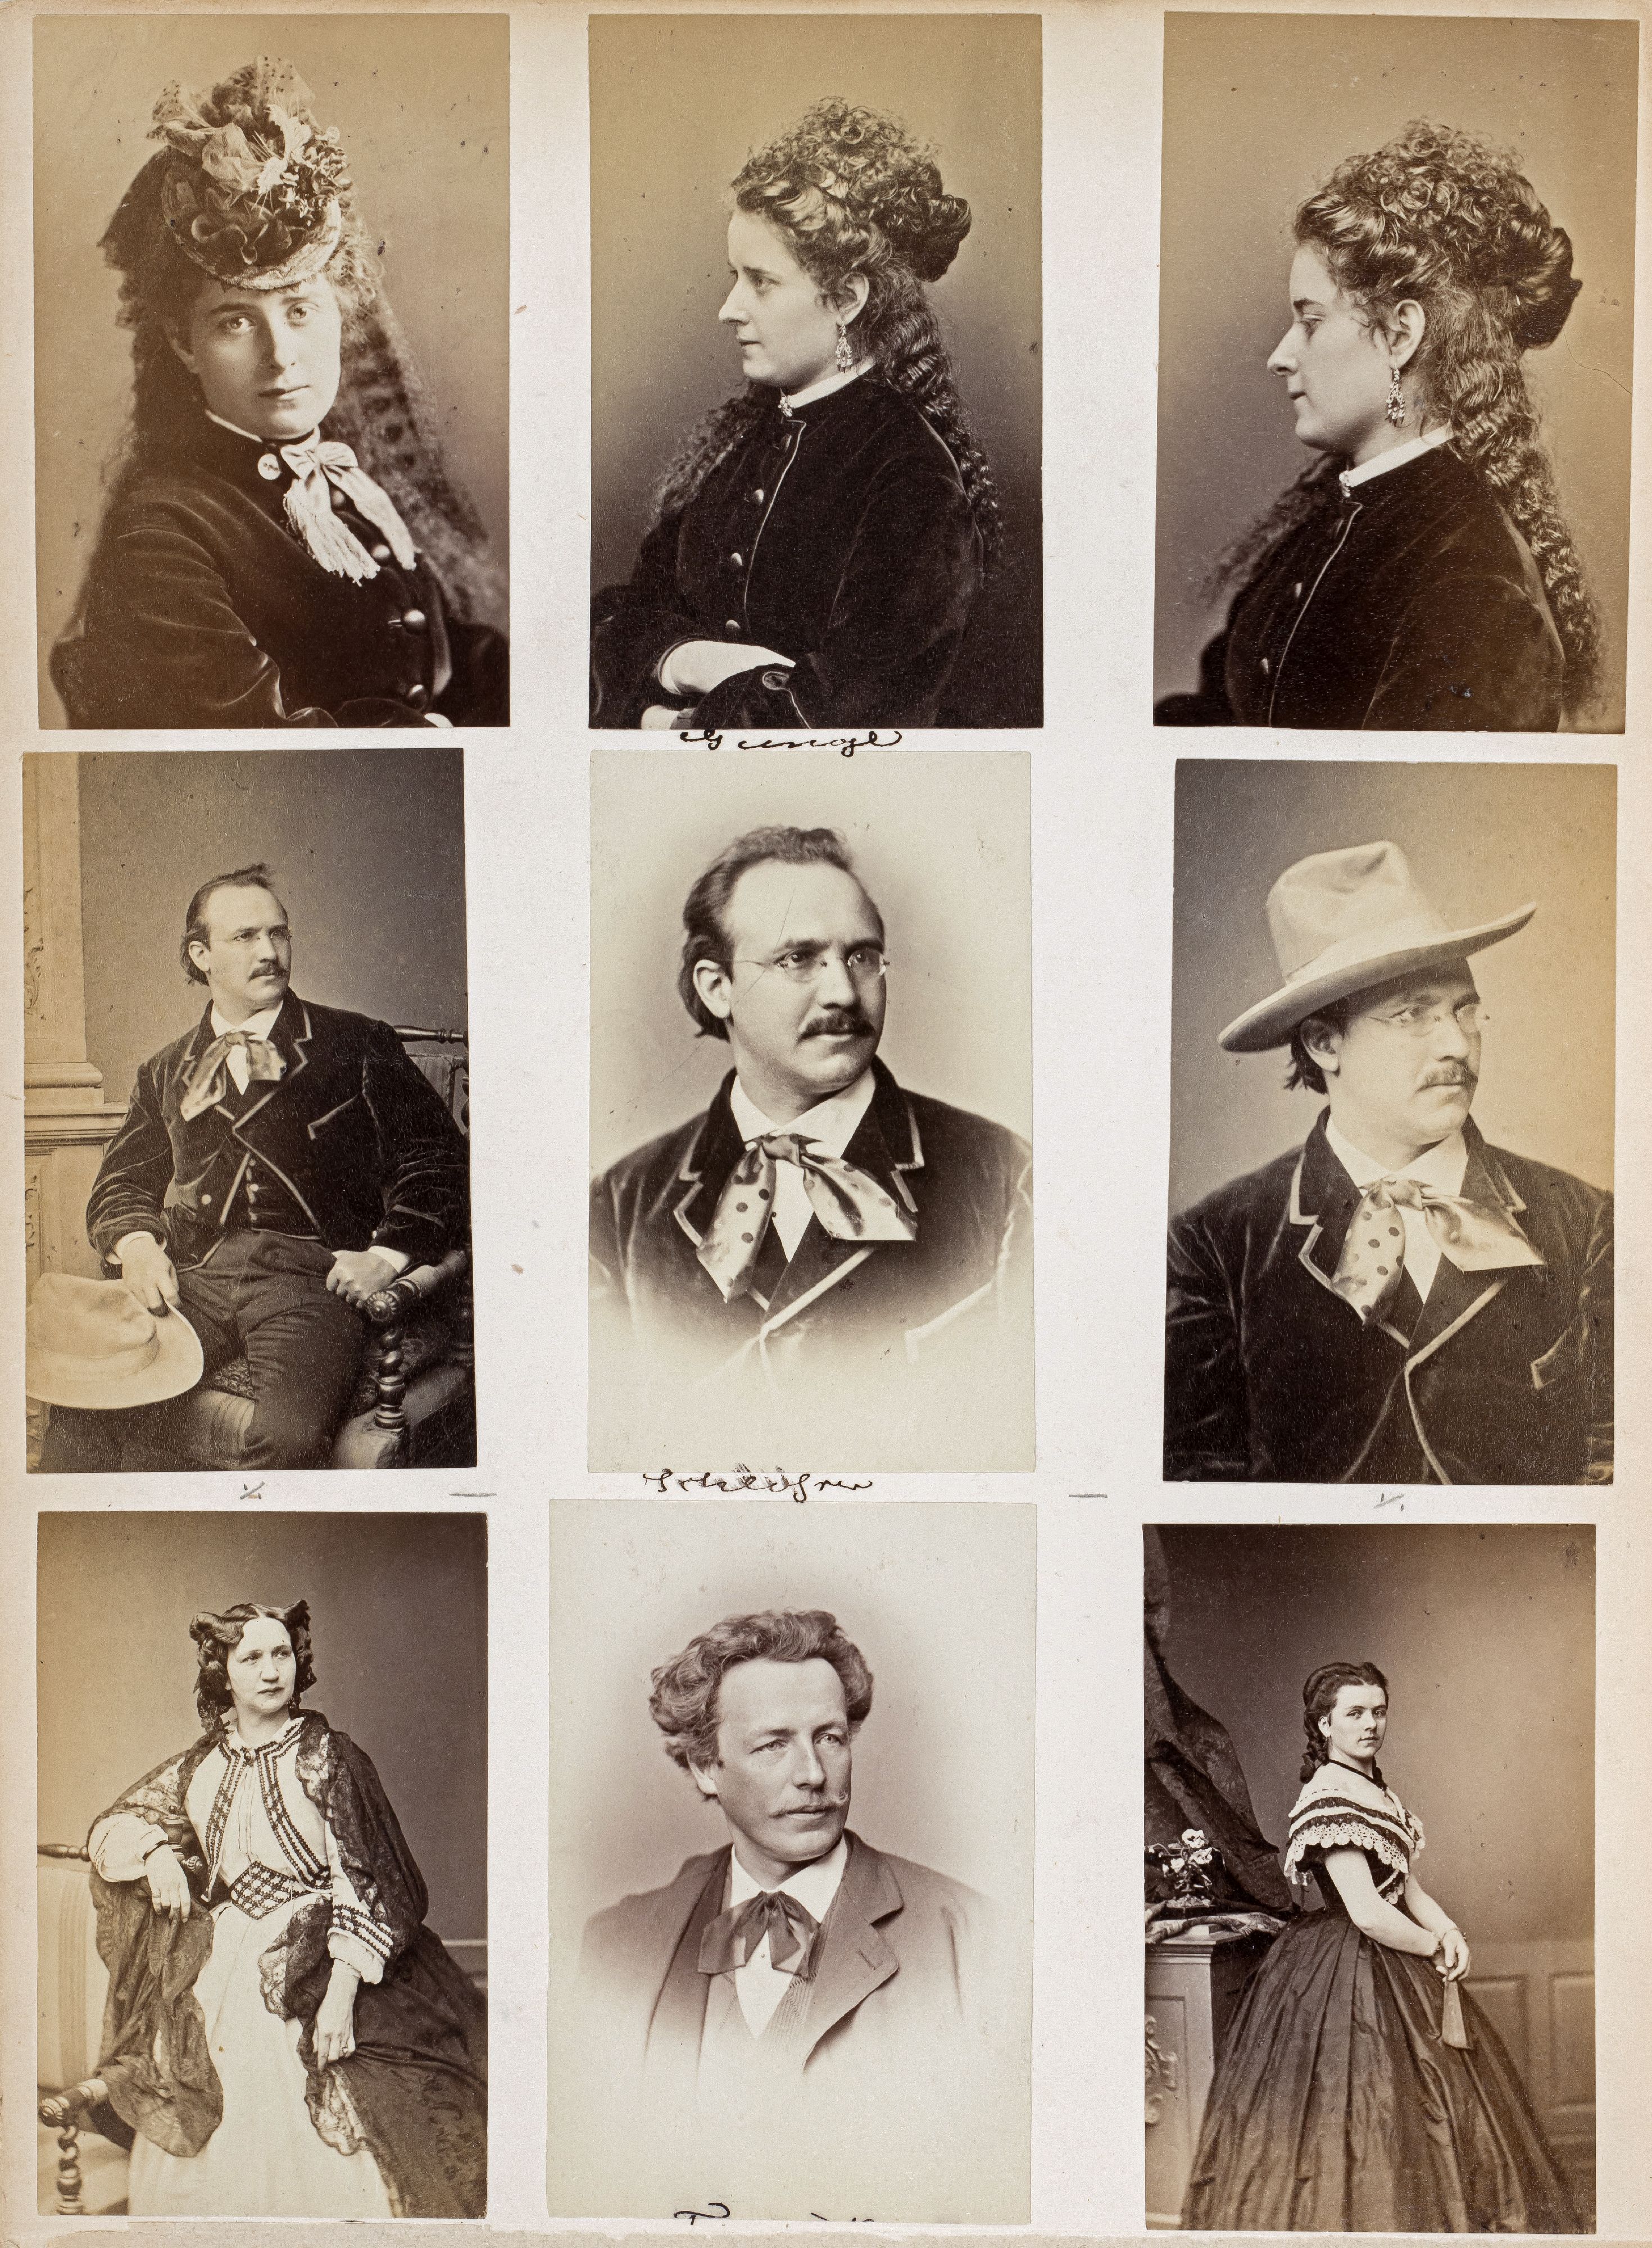 FOTOGRAFIE | Hanfstaengl, Franz | 1807 Baiernrain bei Tölz - 1877 München - Bild 11 aus 25